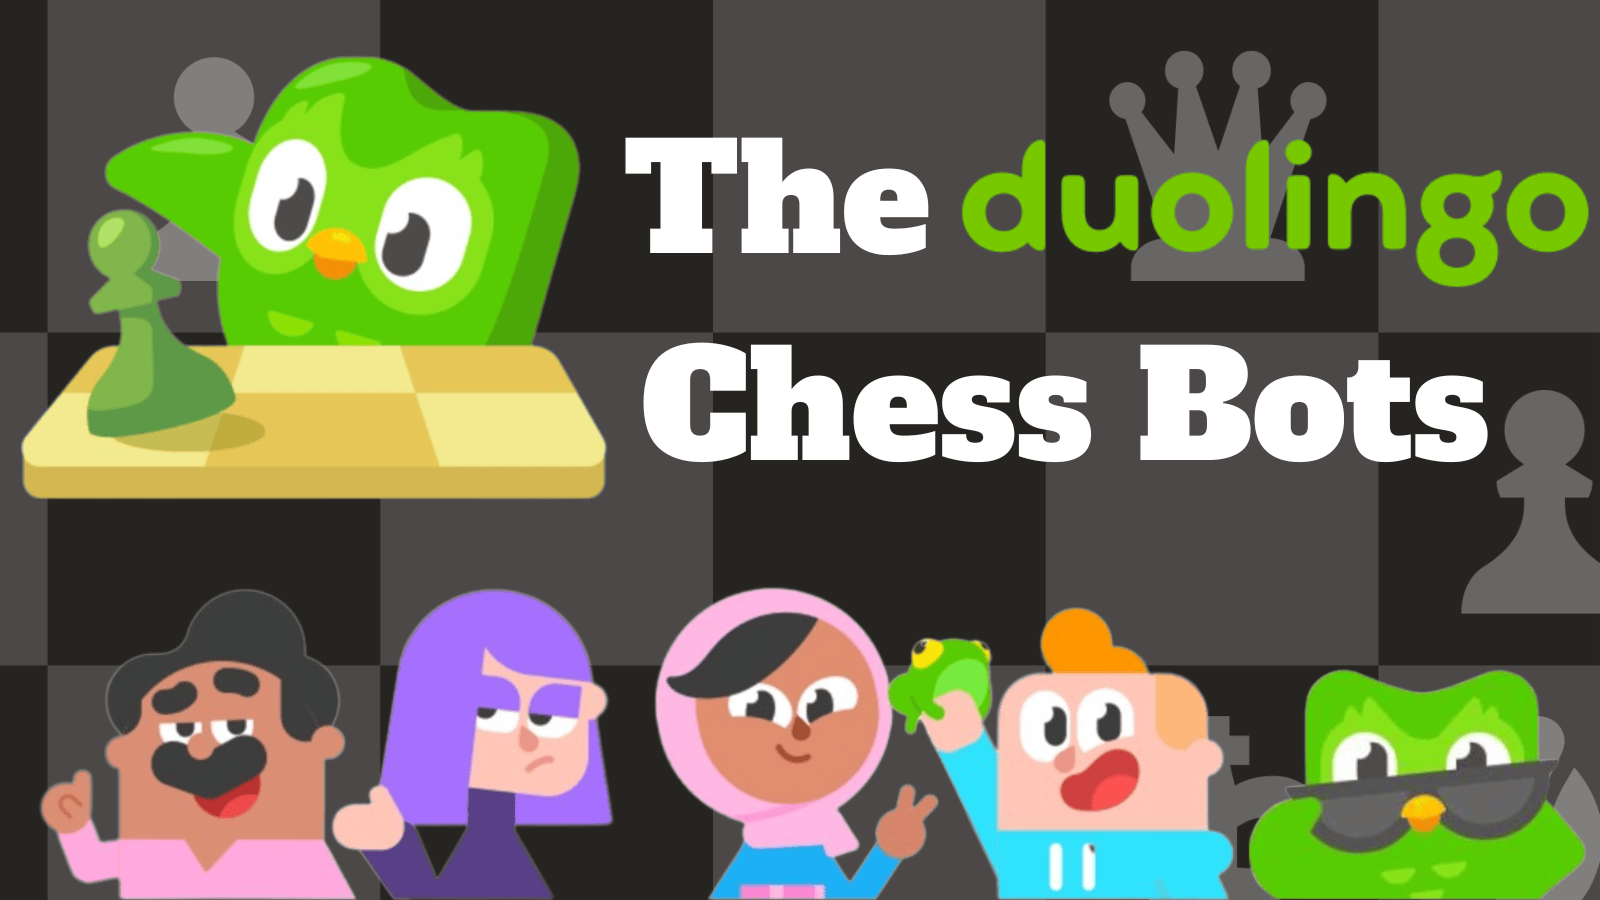 Duolingo dá um mês grátis em chess.com #chess #duolingo #xadrez #duo  #shorts 